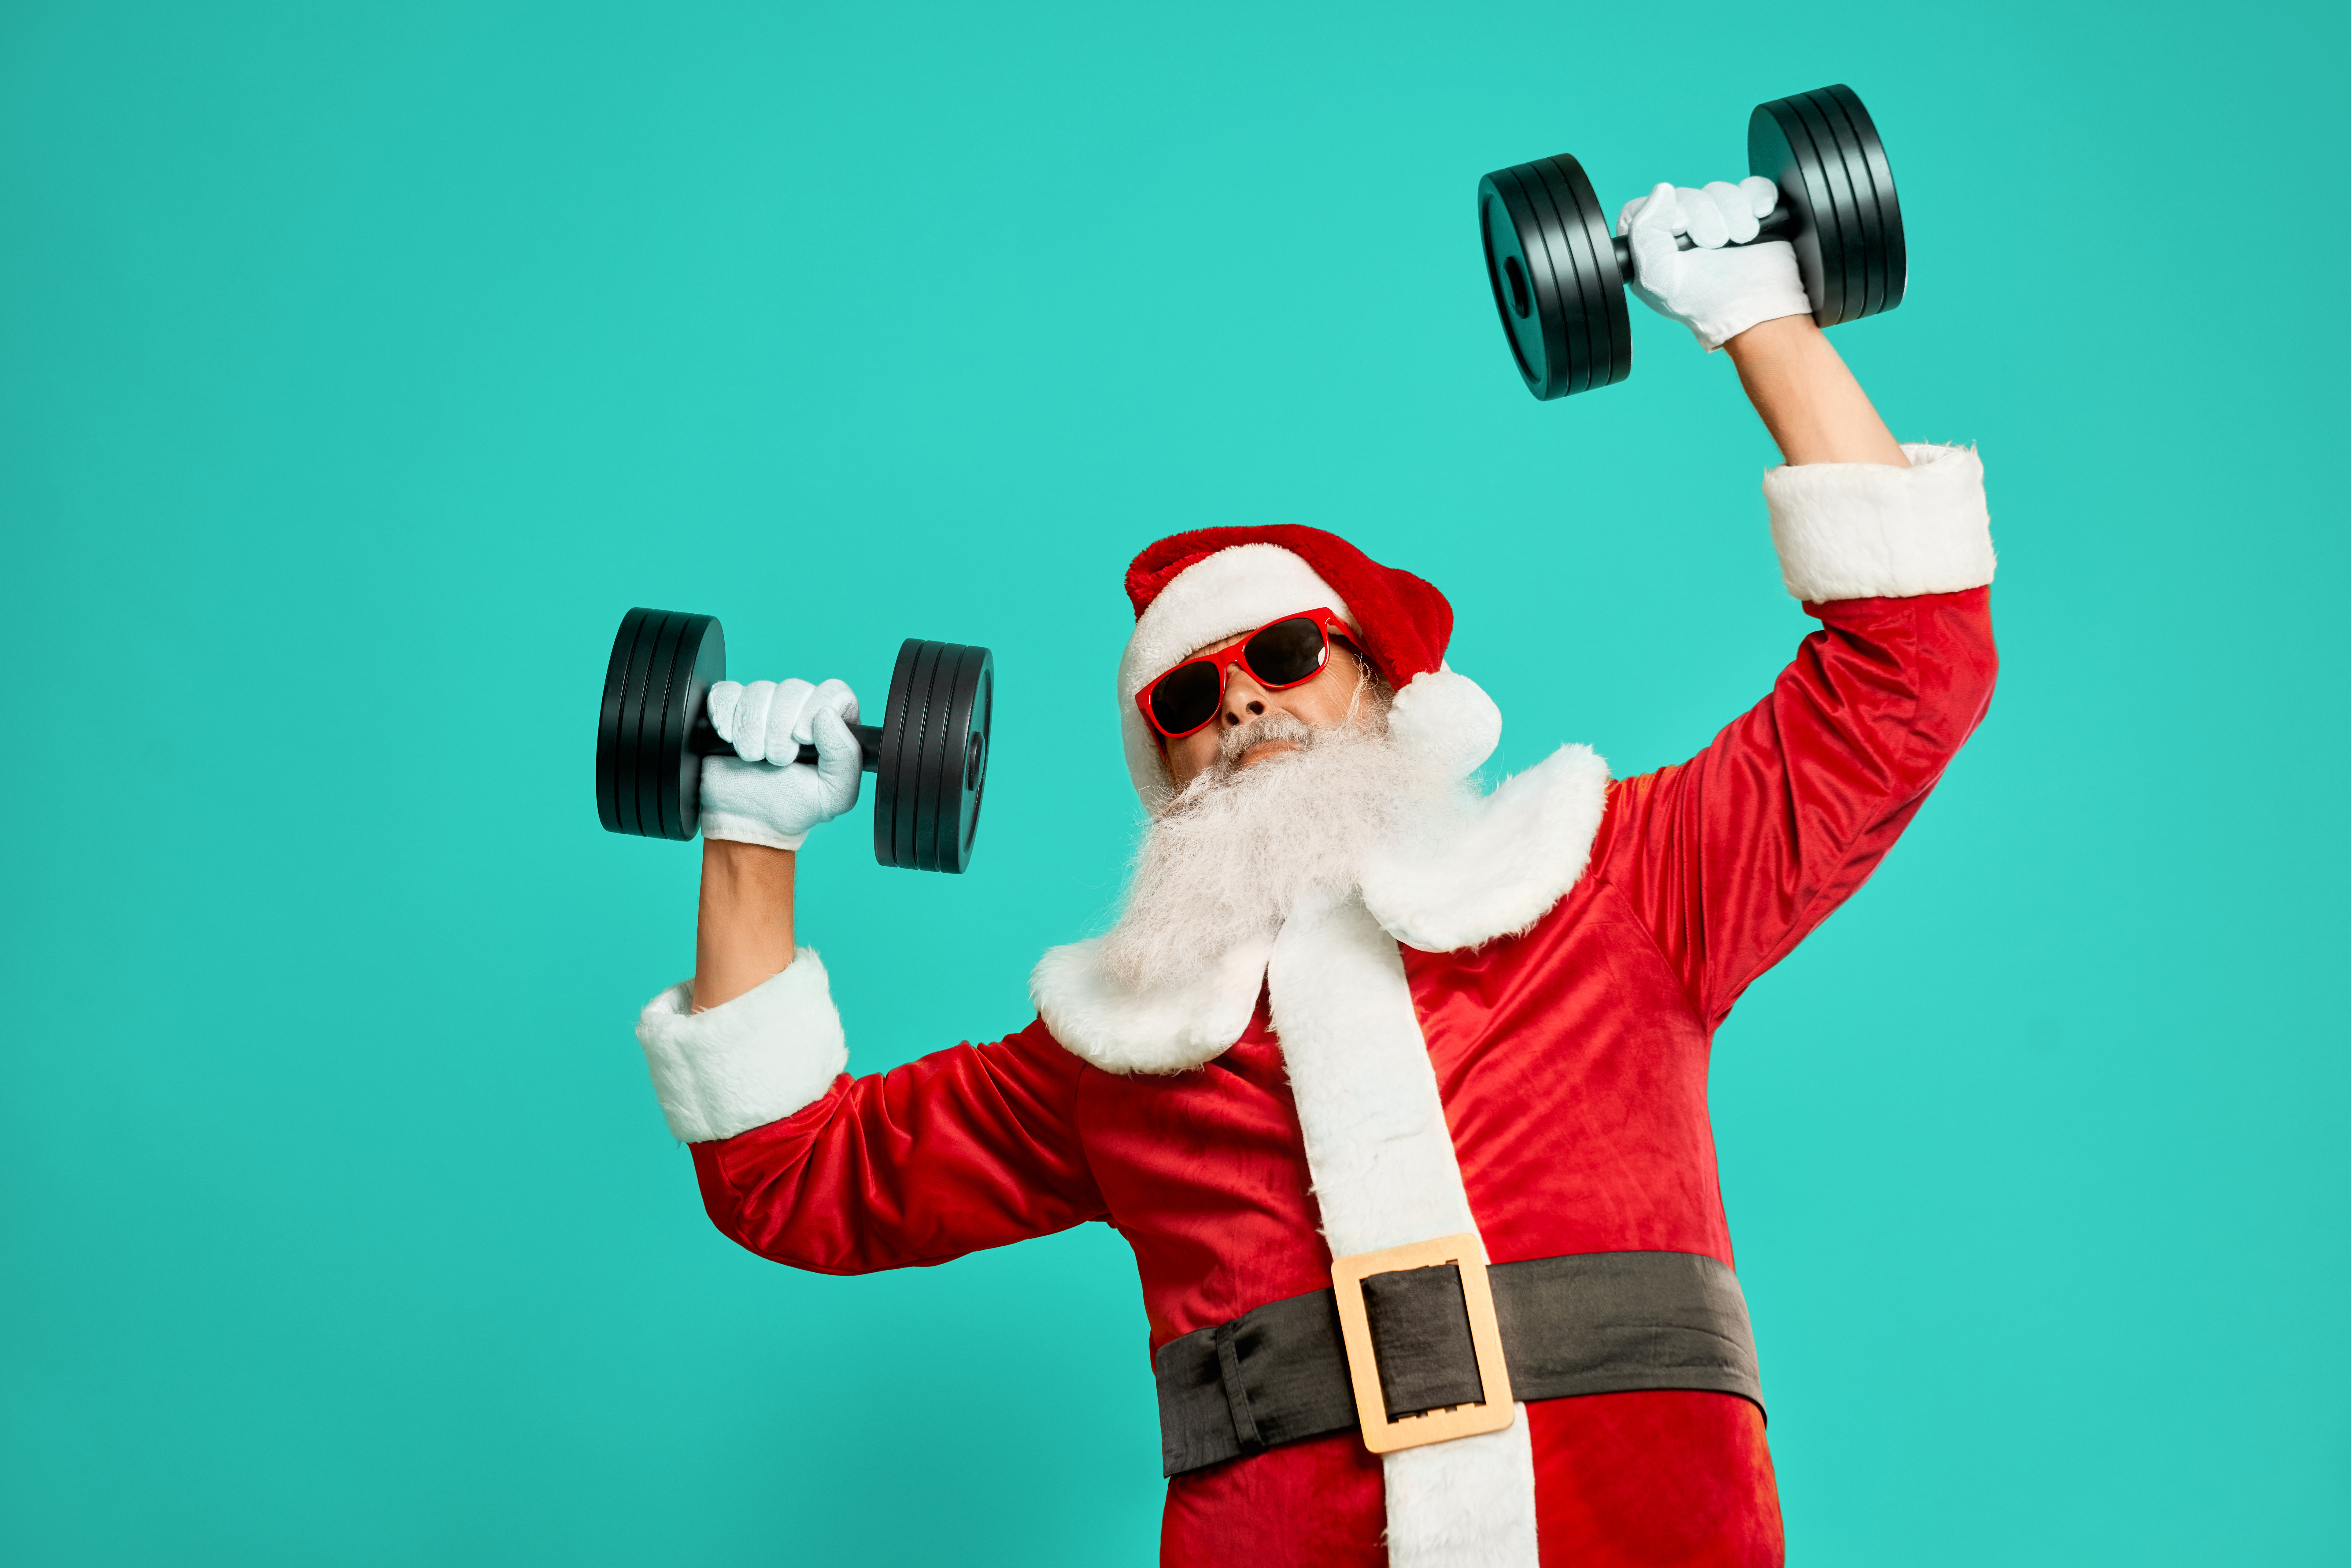 10 oryginalnych prezentów świątecznych, które wzbogacą ofertę Twojego klubu fitness